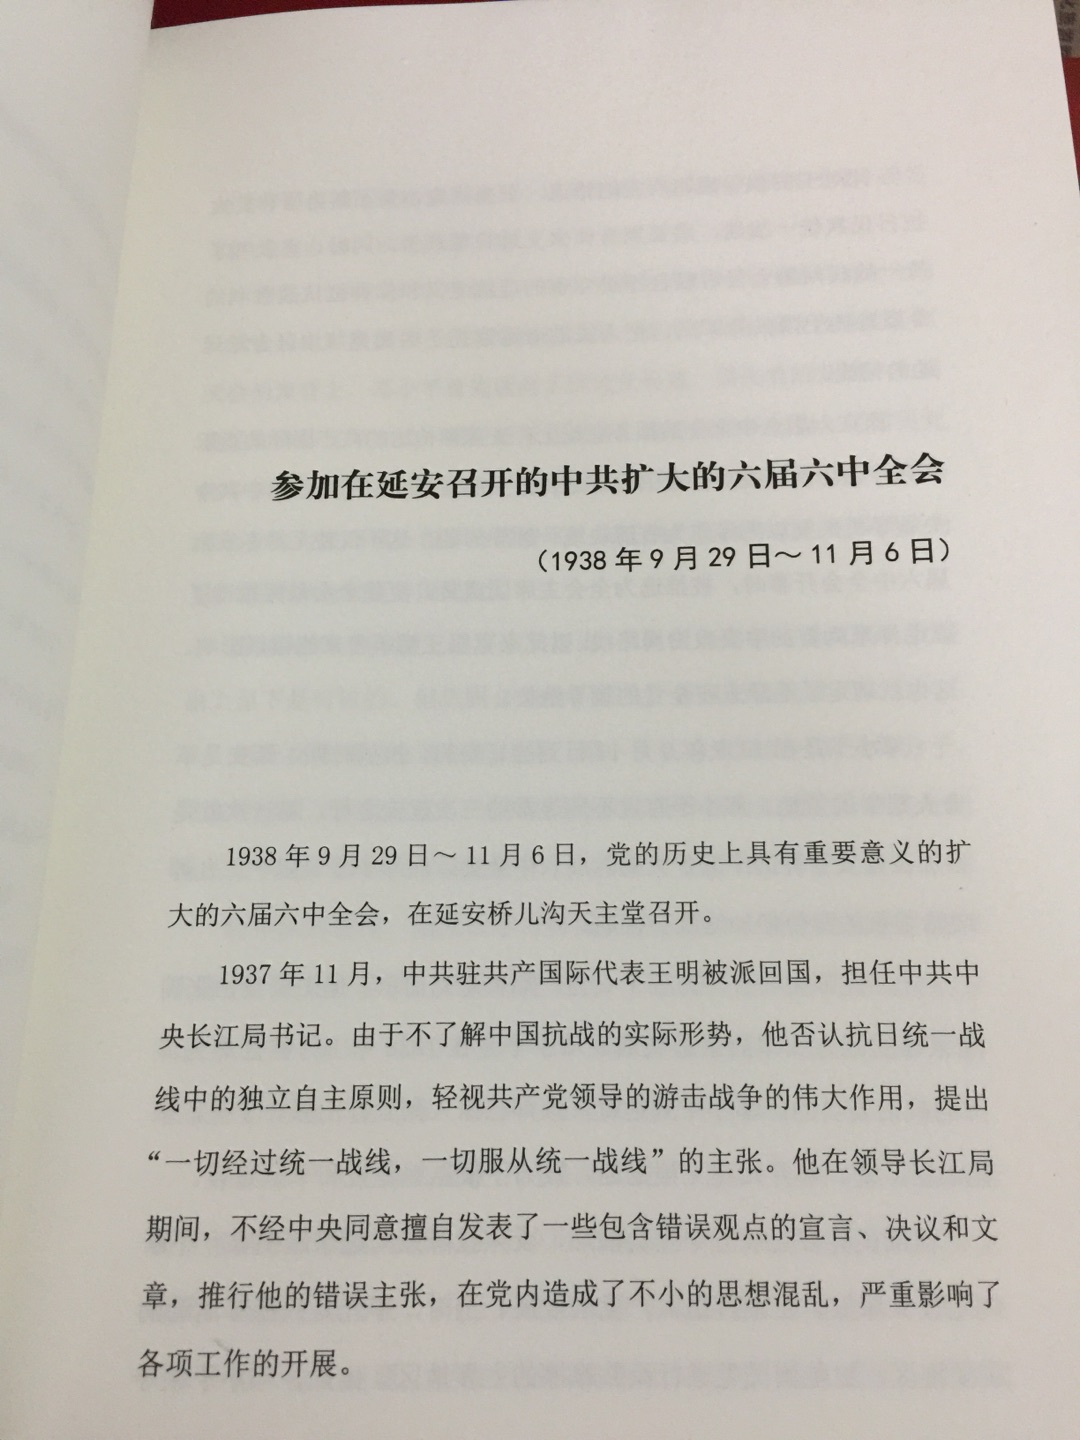 研究邓小平和中国问题很好的参考资料，不是原文，而是描述性的记录。